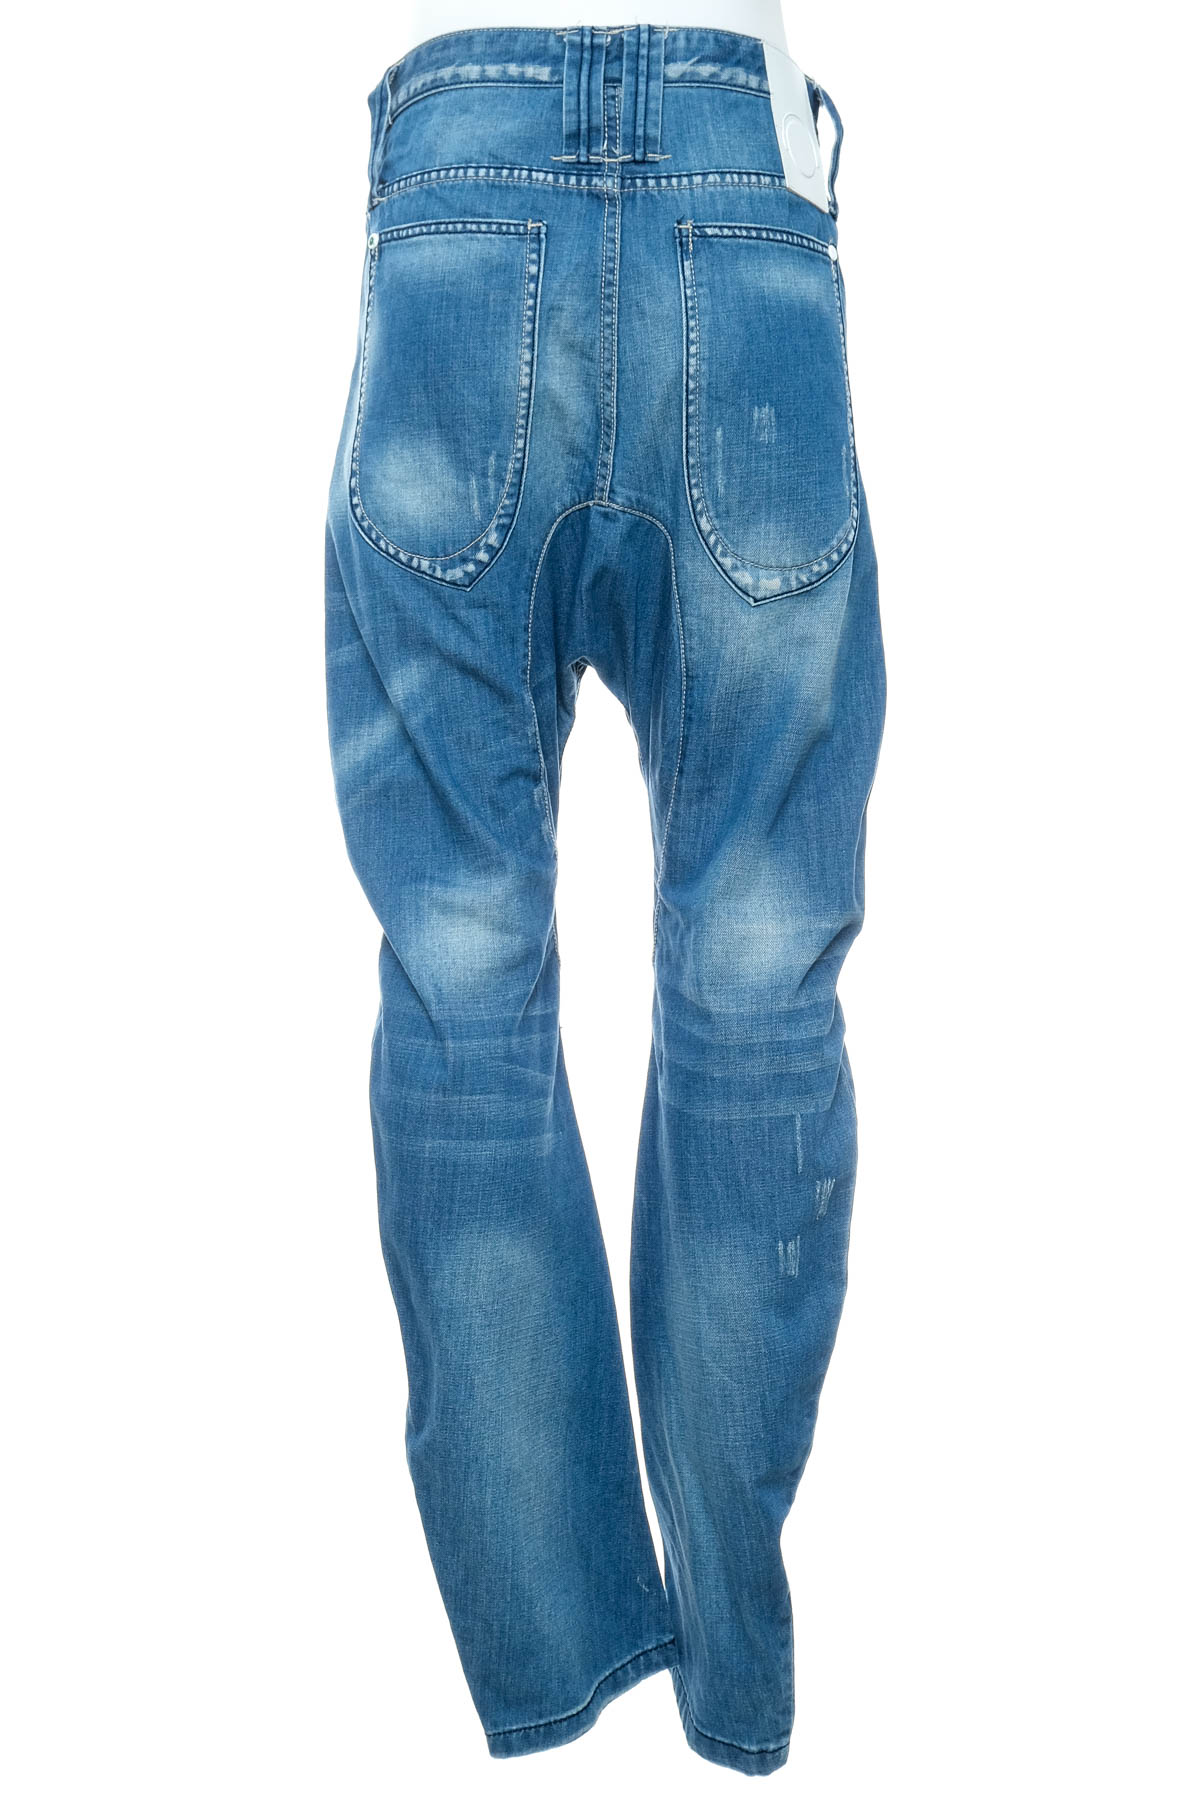 Men's jeans - HUMOR - 1